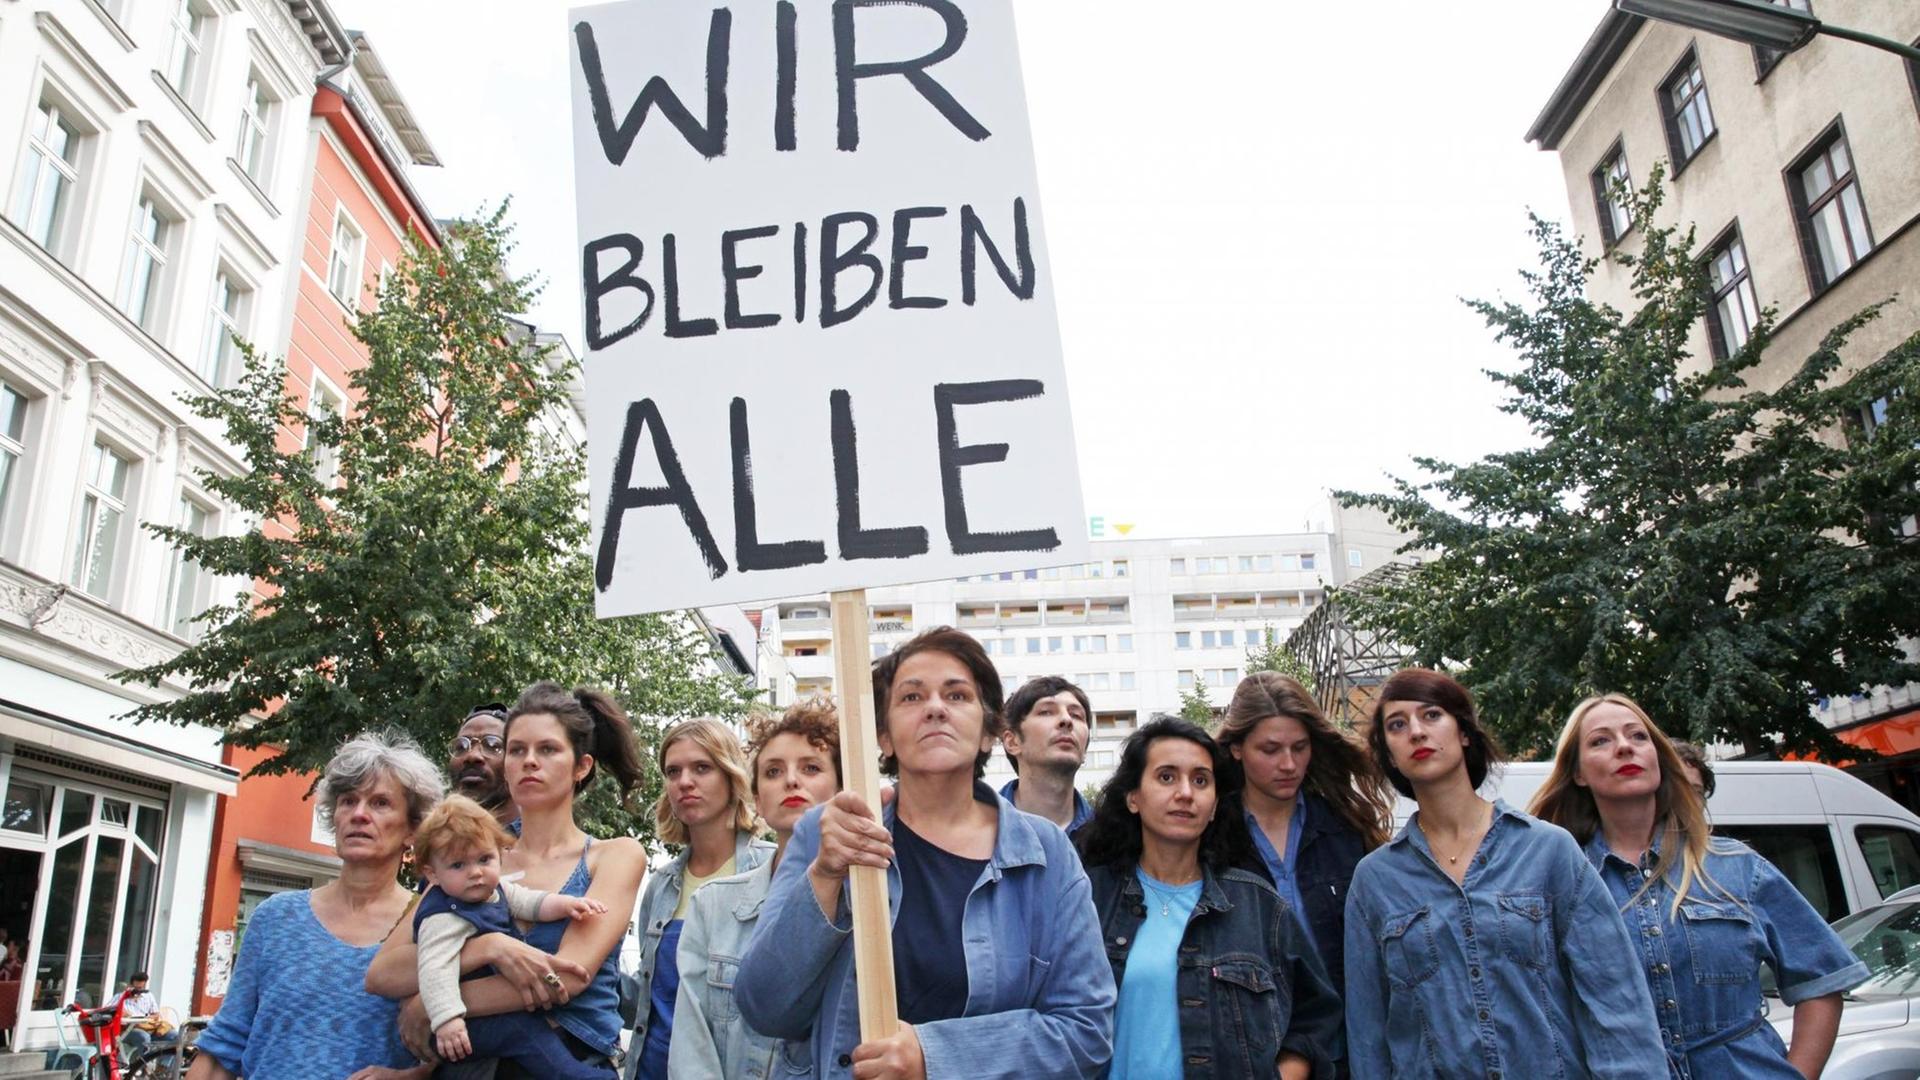 Die Autorin Christiane Rösinger ist mit ihrem Cast zu sehen, sie hält ein Schild mit der Aufschrift "Wir bleiben Alle" hoch.